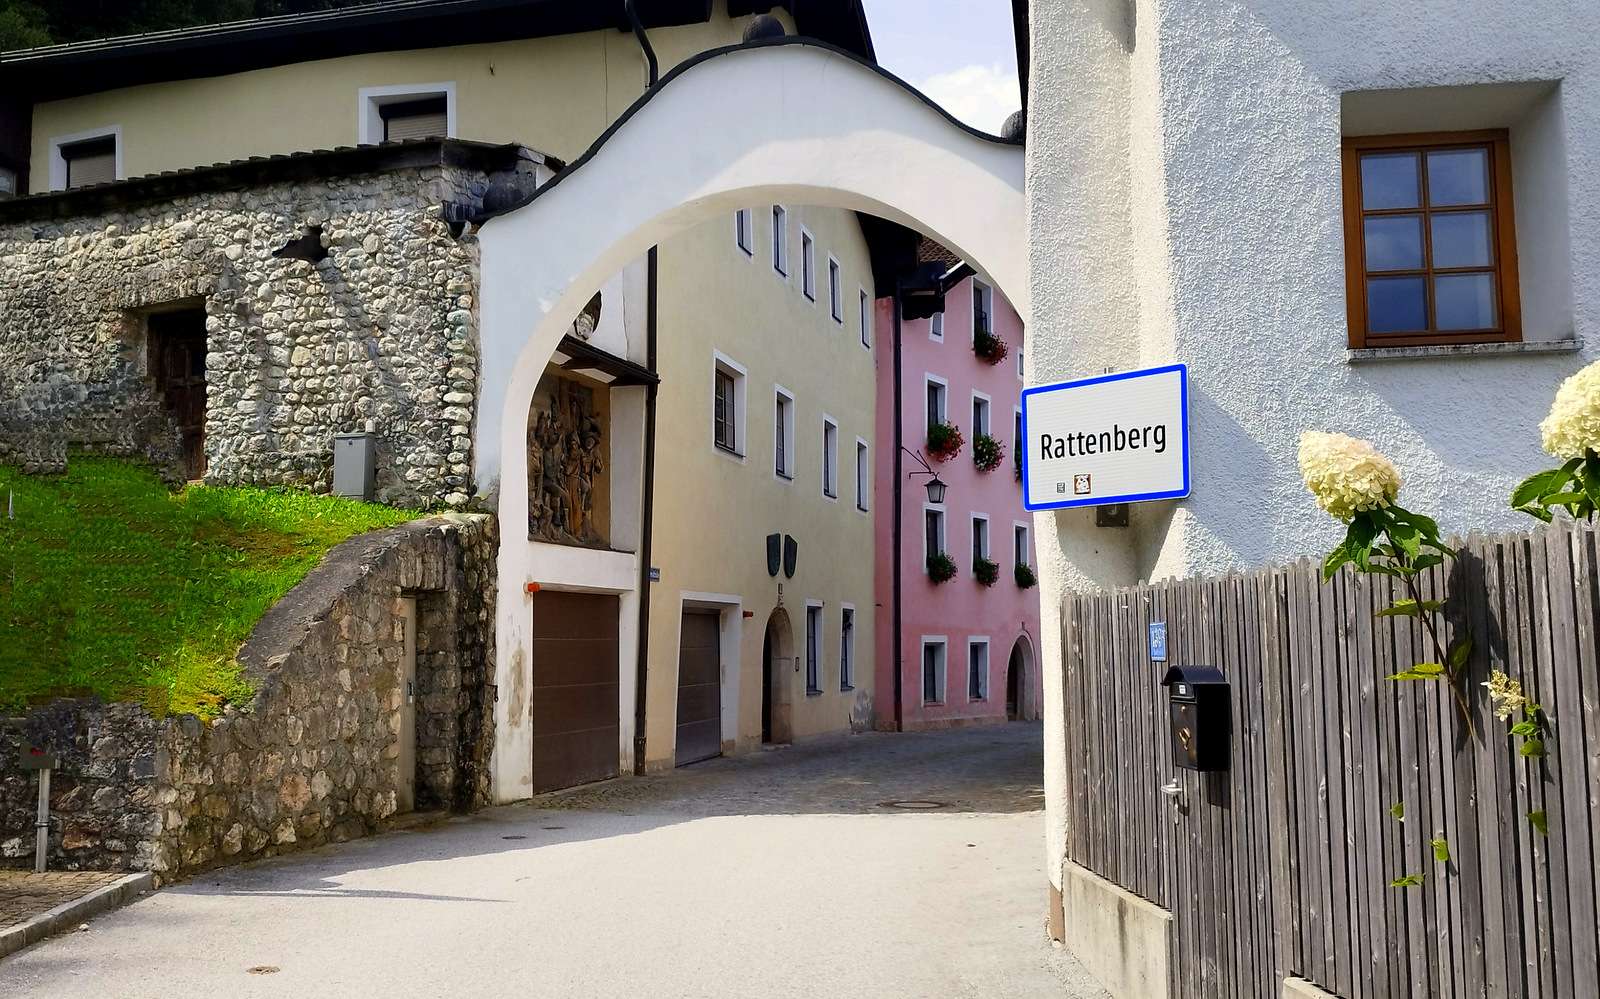 Rattenberg - najmniejsze miasto w Austrii puzzle online